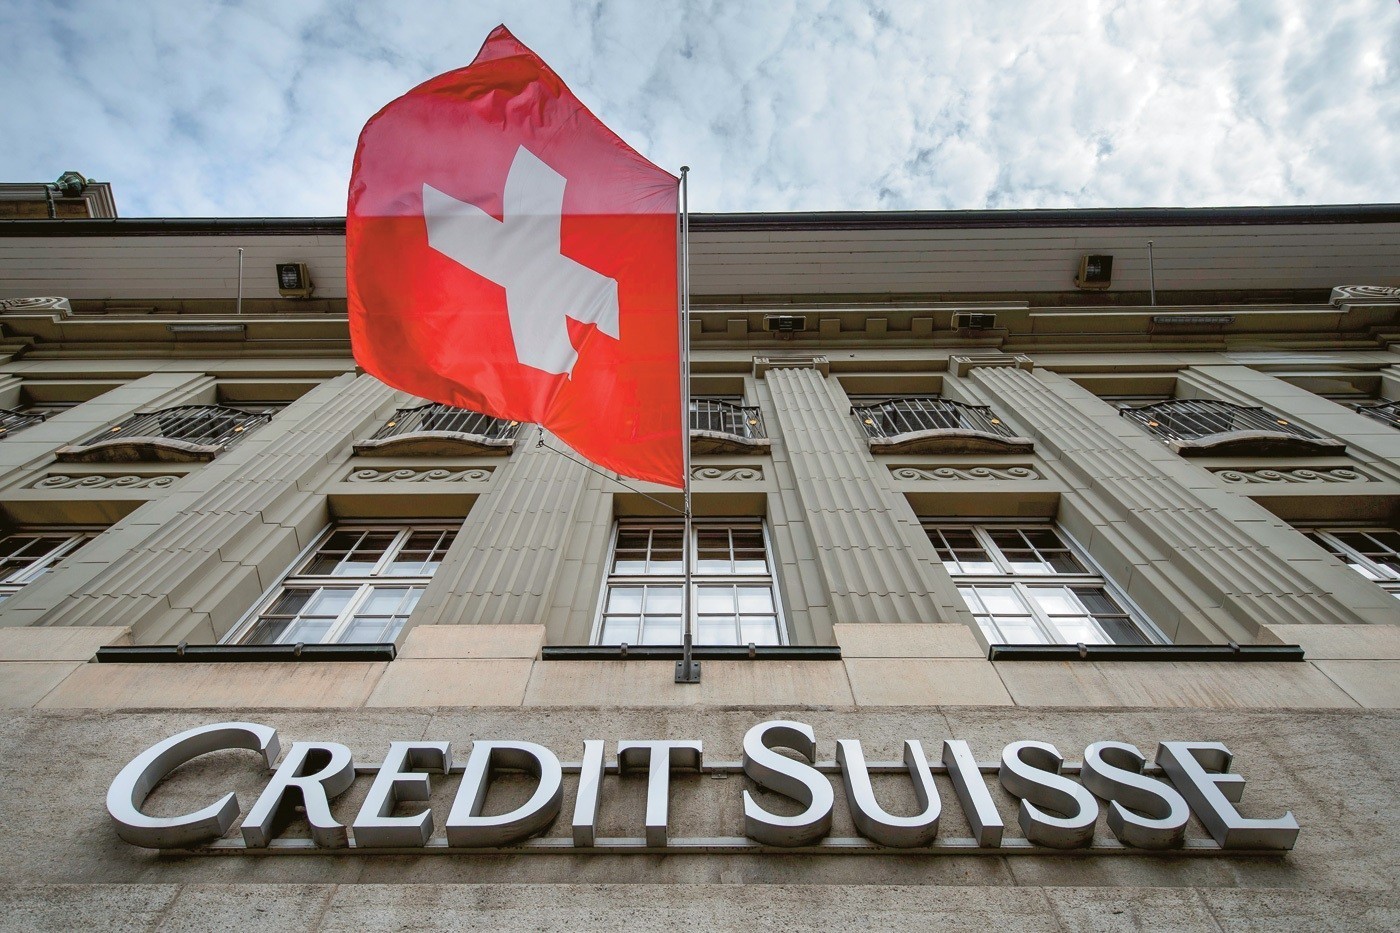 Στη δικαιοσύνη προσφεύγουν οι ομολογιούχοι της Credit Suisse για ζημιές 4,5 δισ. δολ.